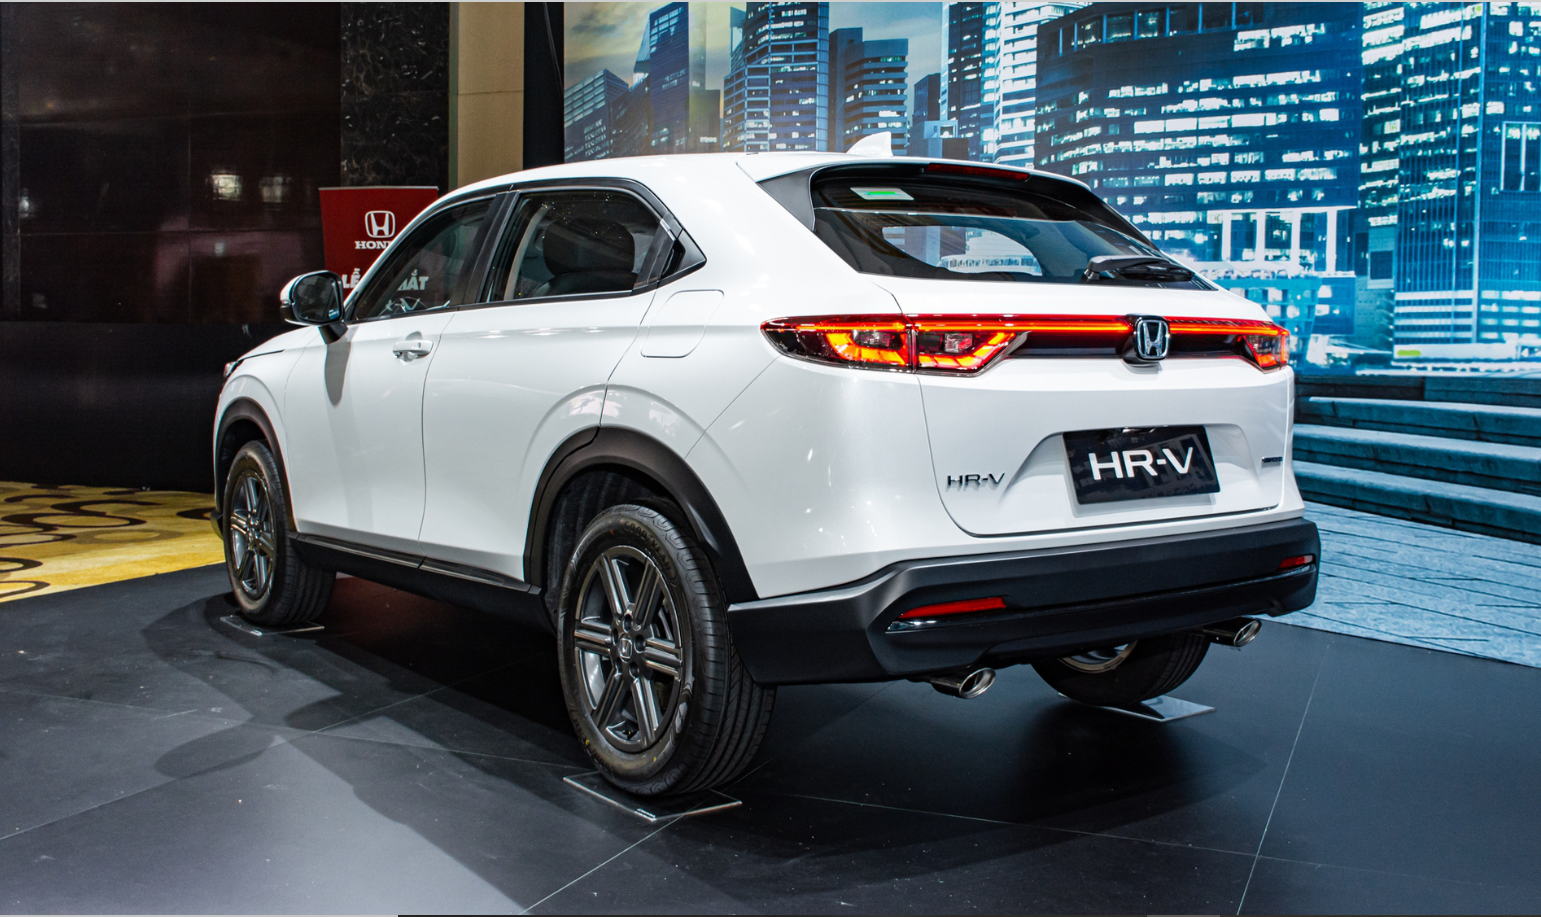 Giá ngang ngửa Hyundai Tucson, Honda HR-V có gì đặc biệt để lôi kéo người dùng? - Ảnh 2.